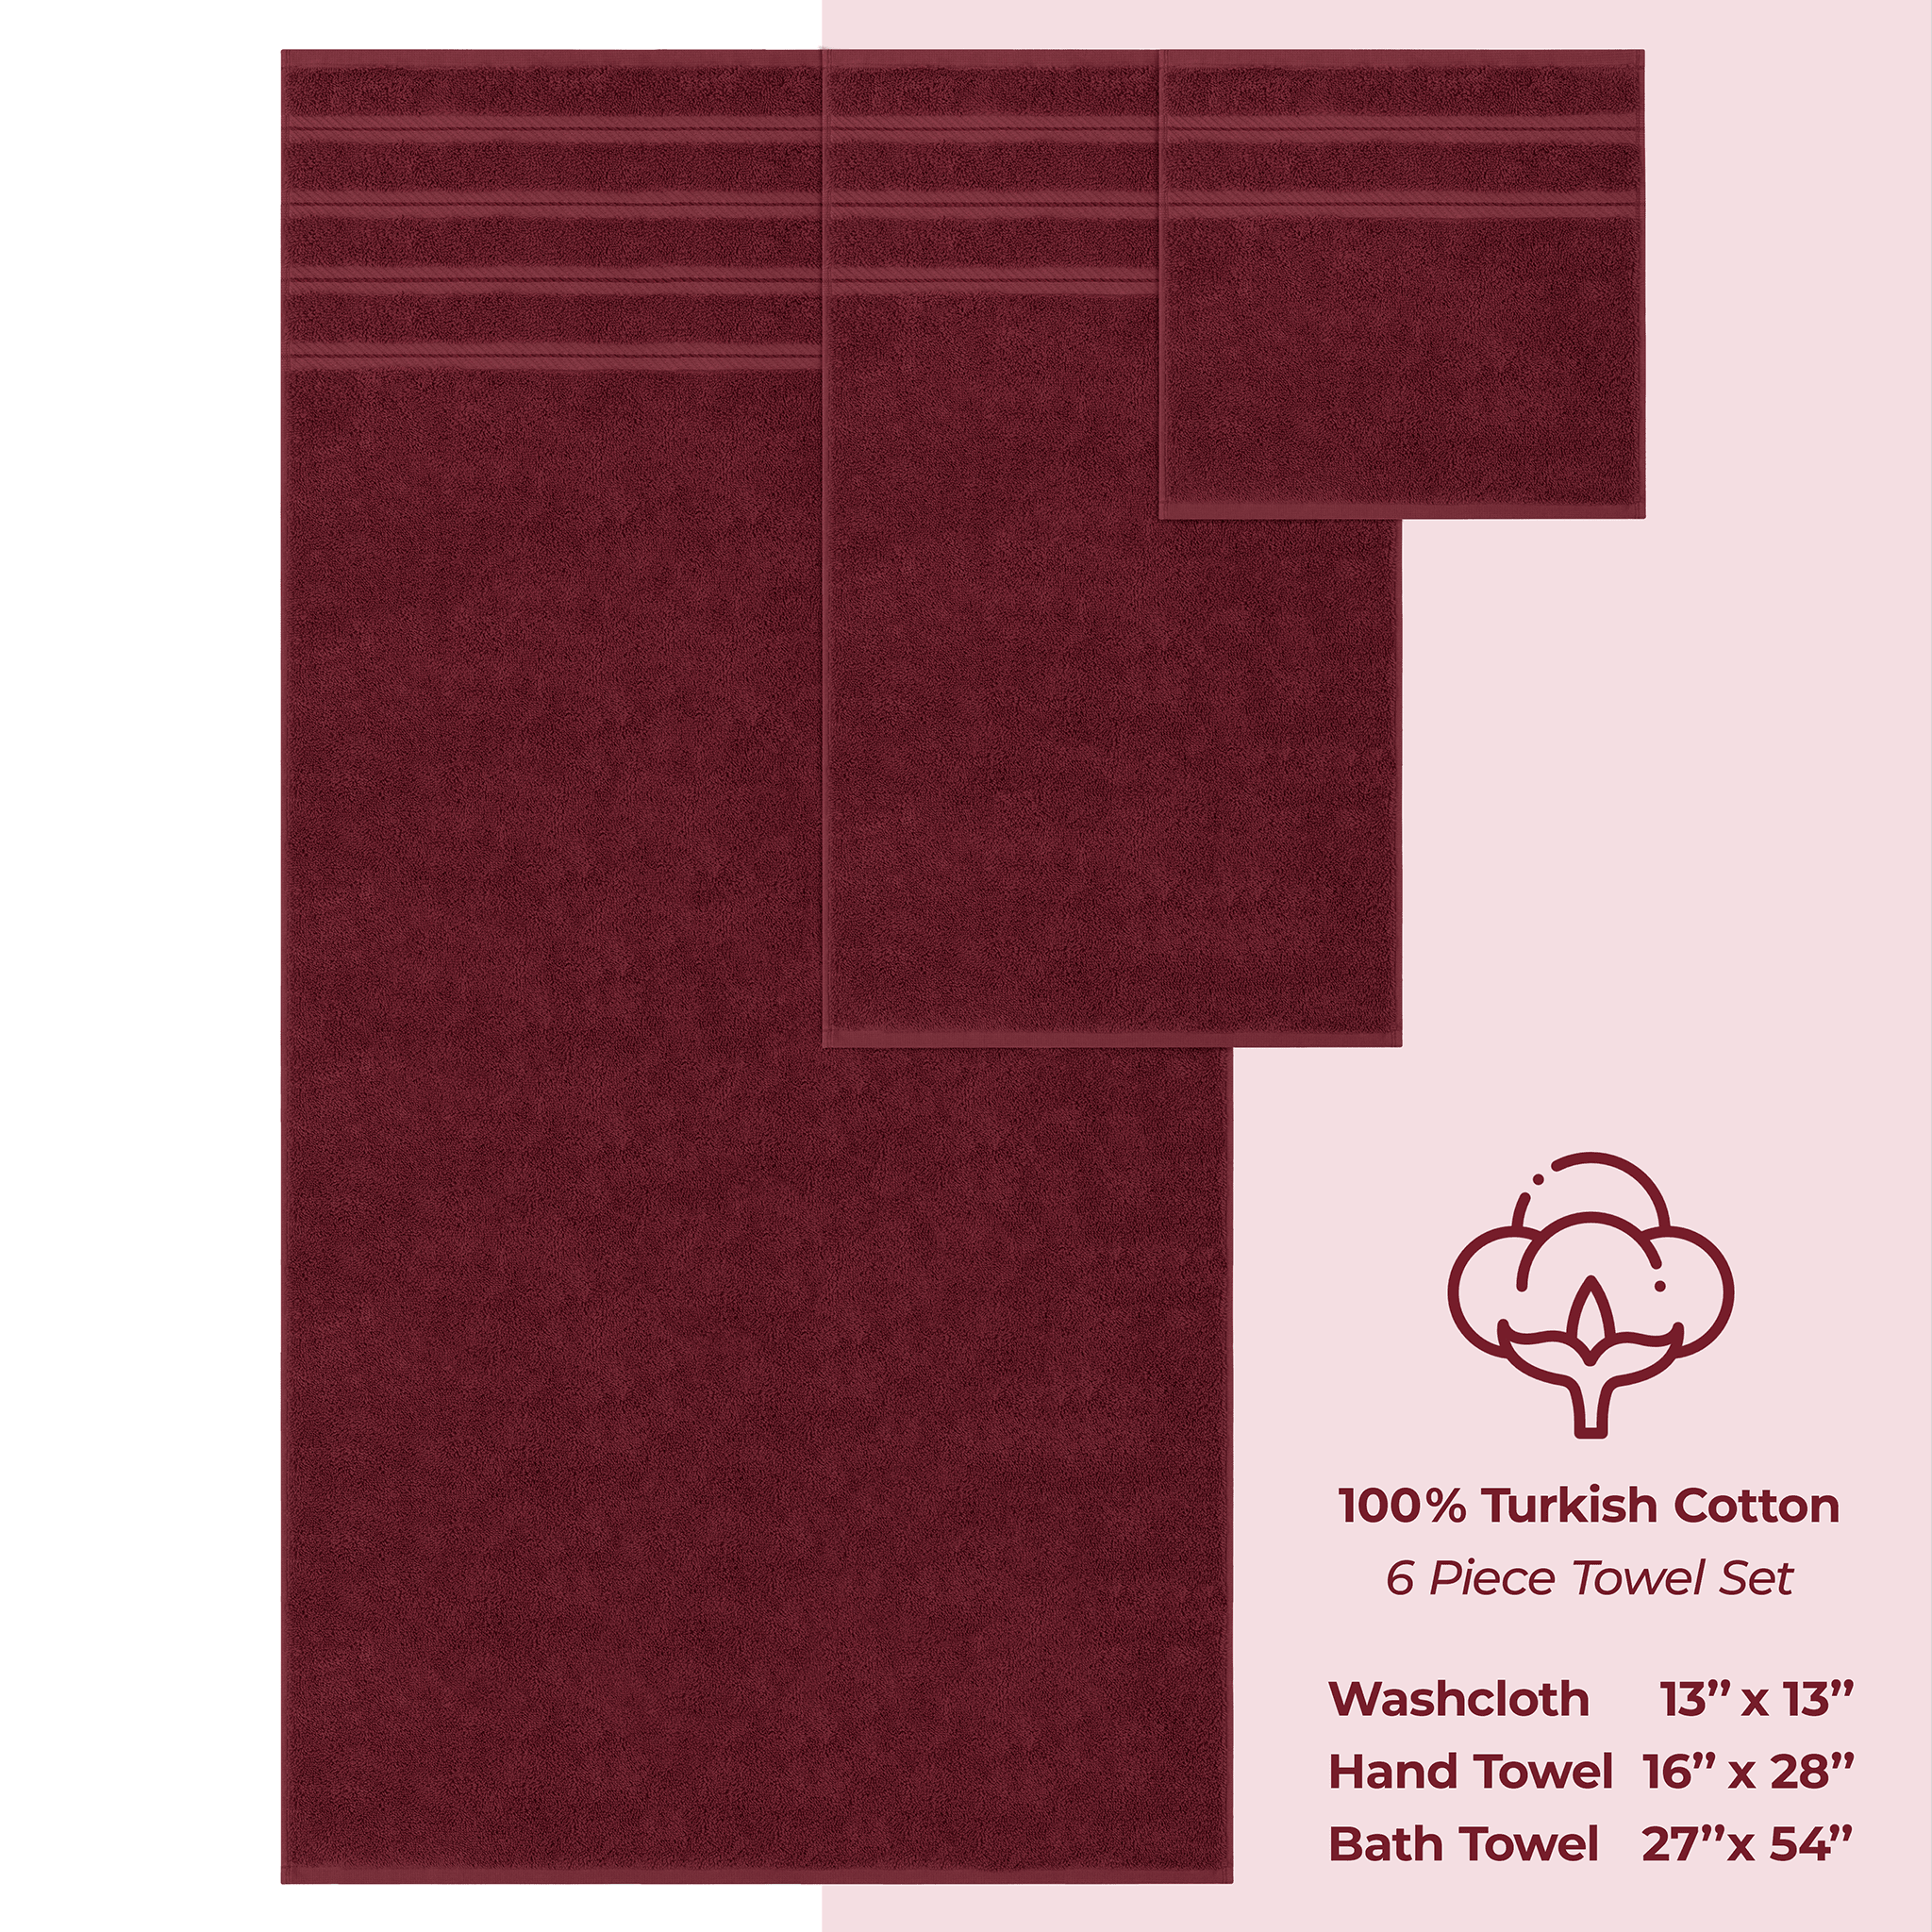 American Soft Linen - 6 Piece Turkish Cotton Bath Towel Set - Bordeaux-Red - 4